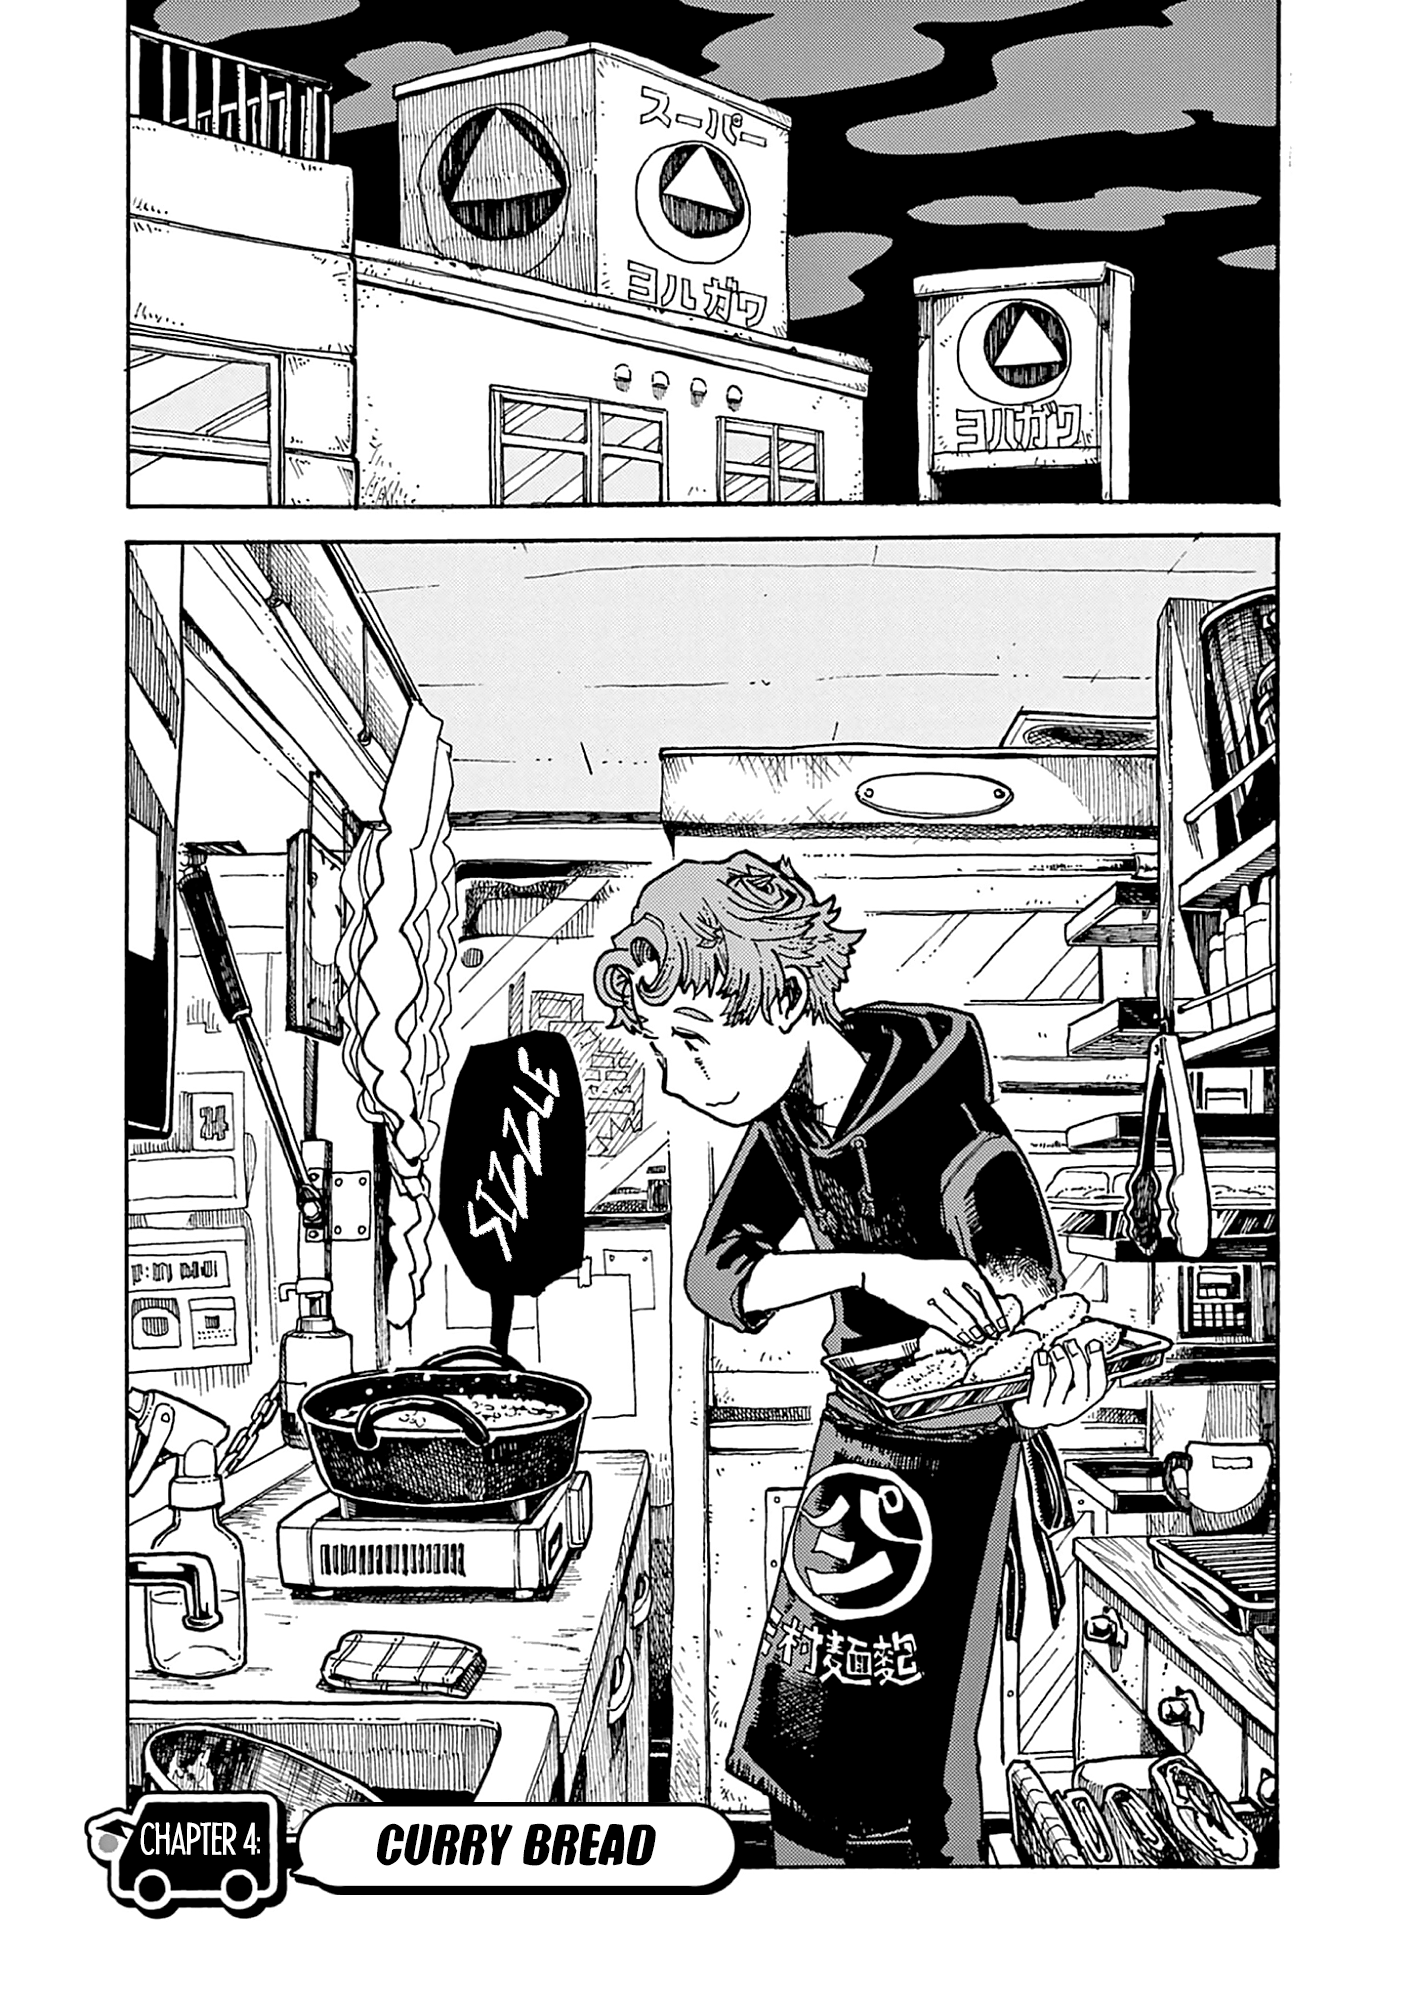 Kurukuru Kuruma Mimura Pan Vol.1 Chapter 4: Curry Bread - Picture 1